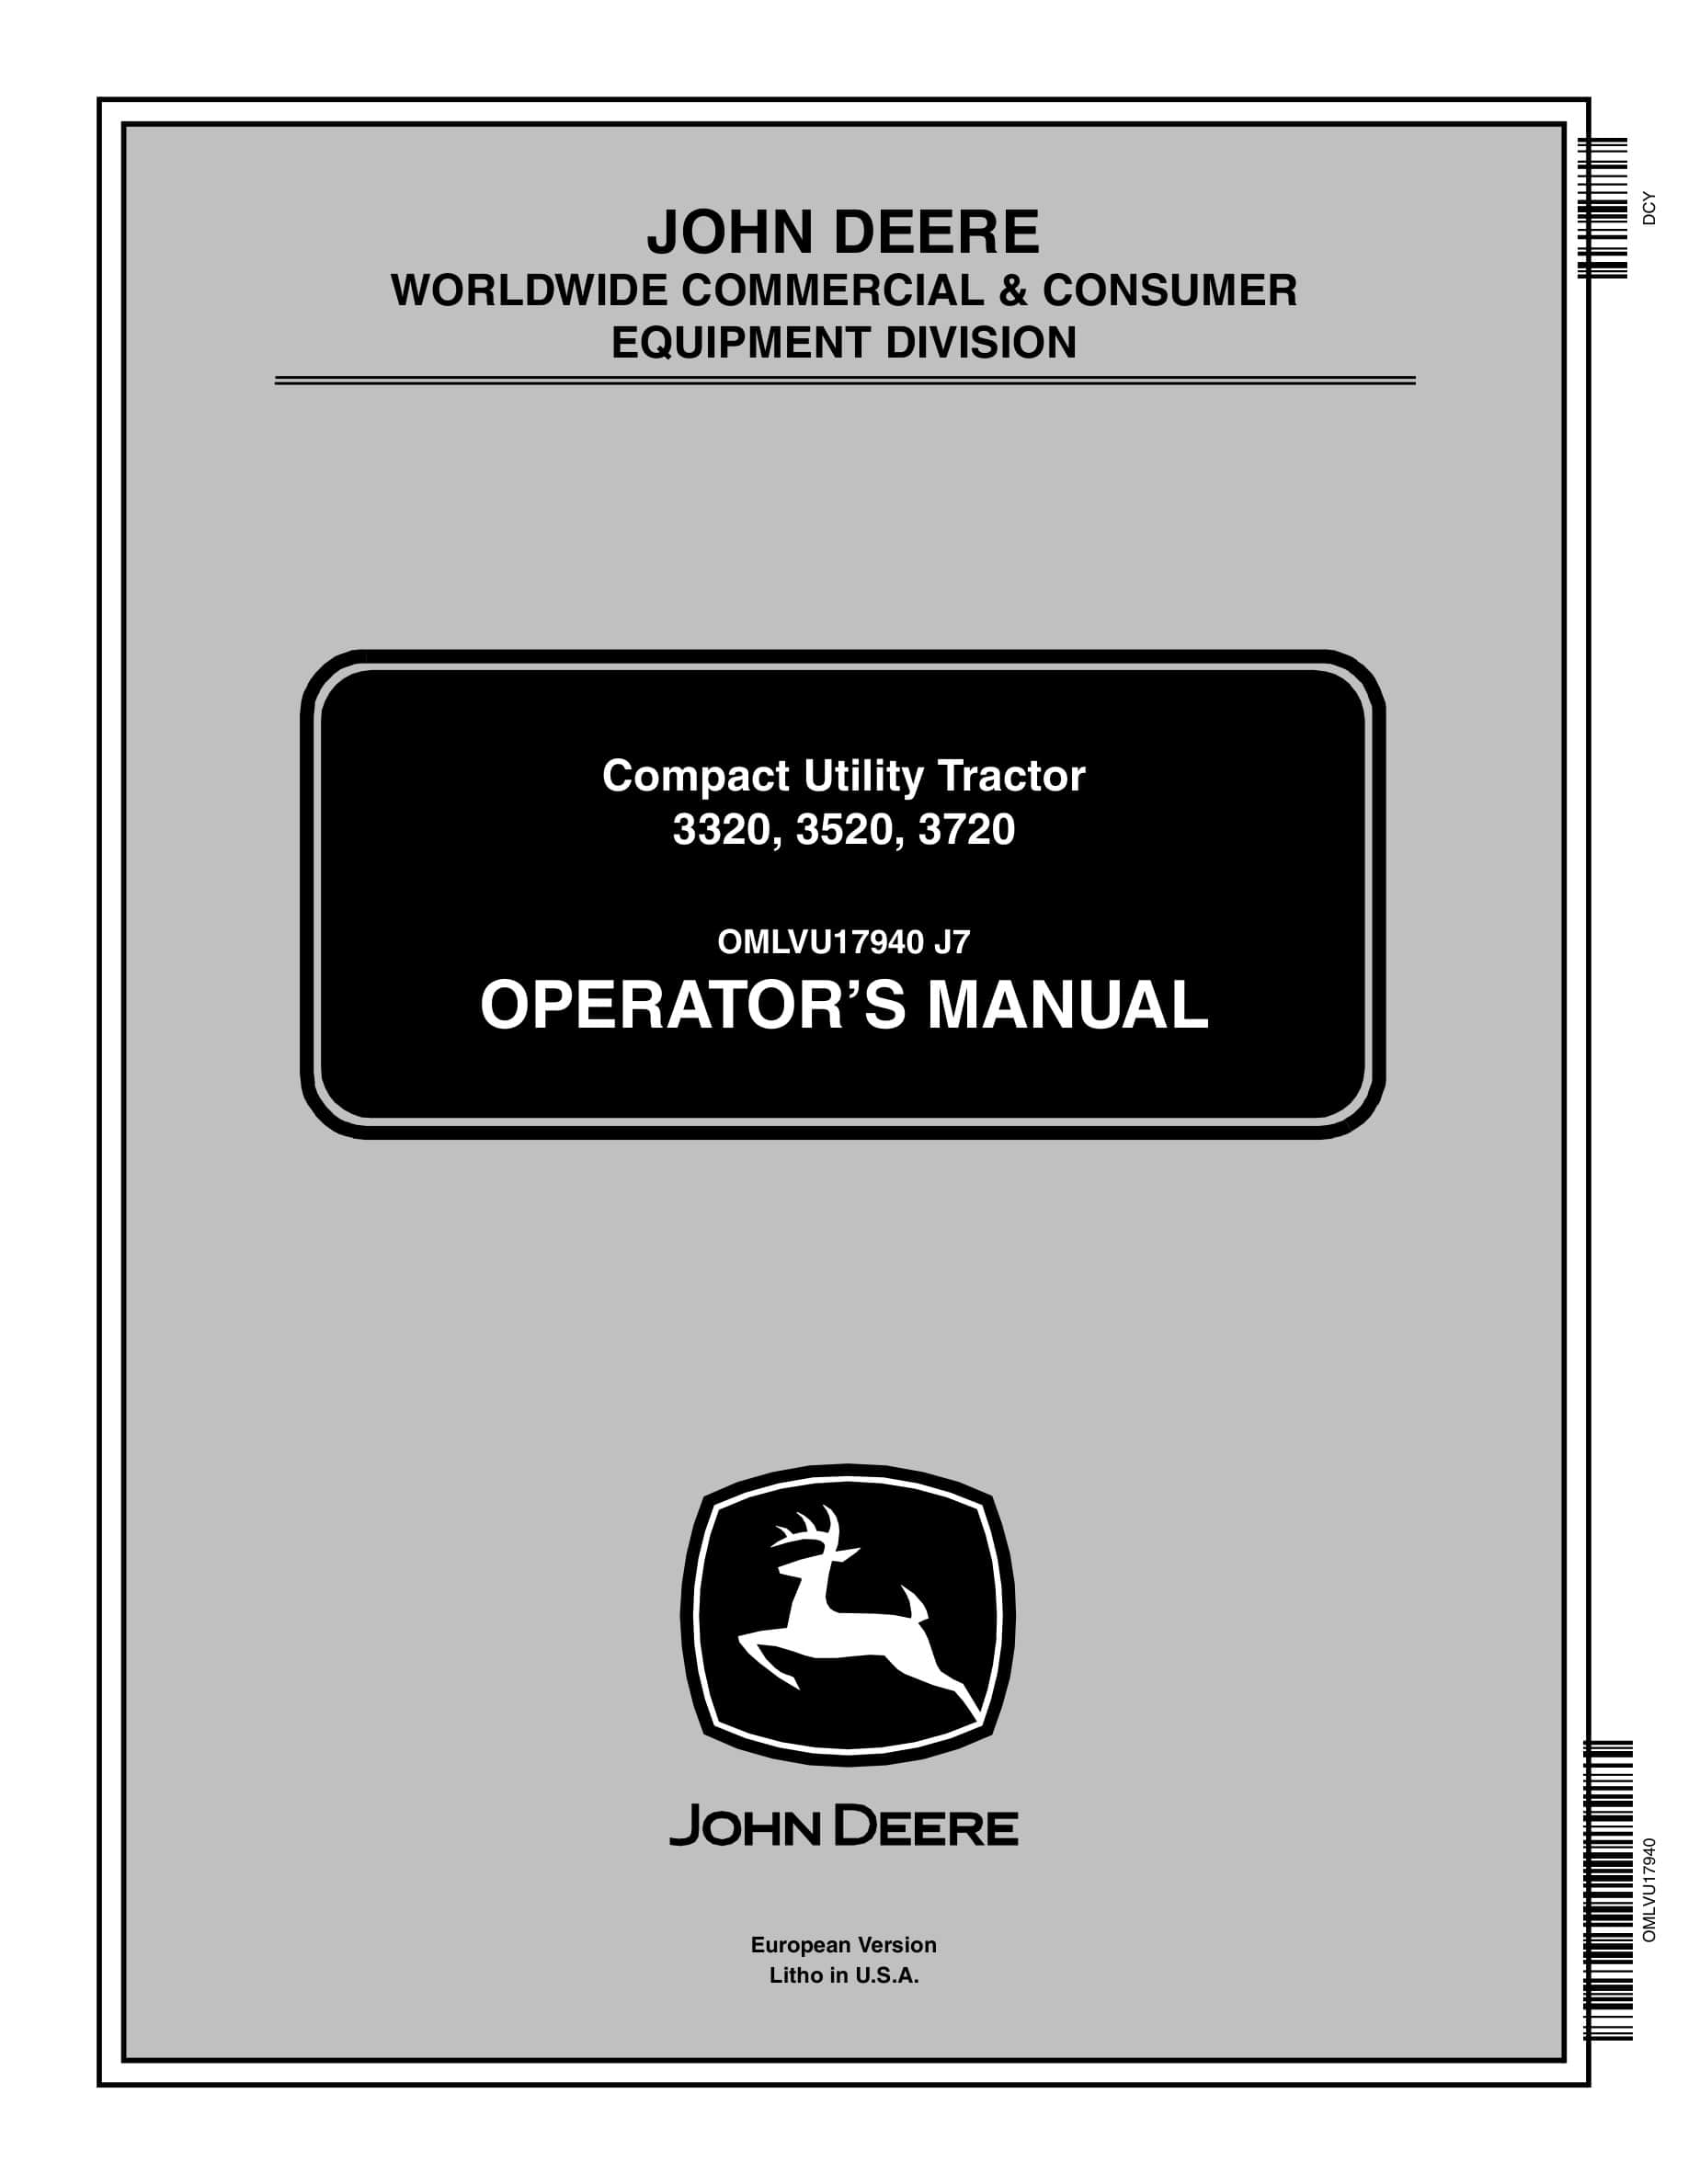 John Deere 3320, 3520, 3720 Compact Utility Tractors Operator Manuals OMLVU17940-1